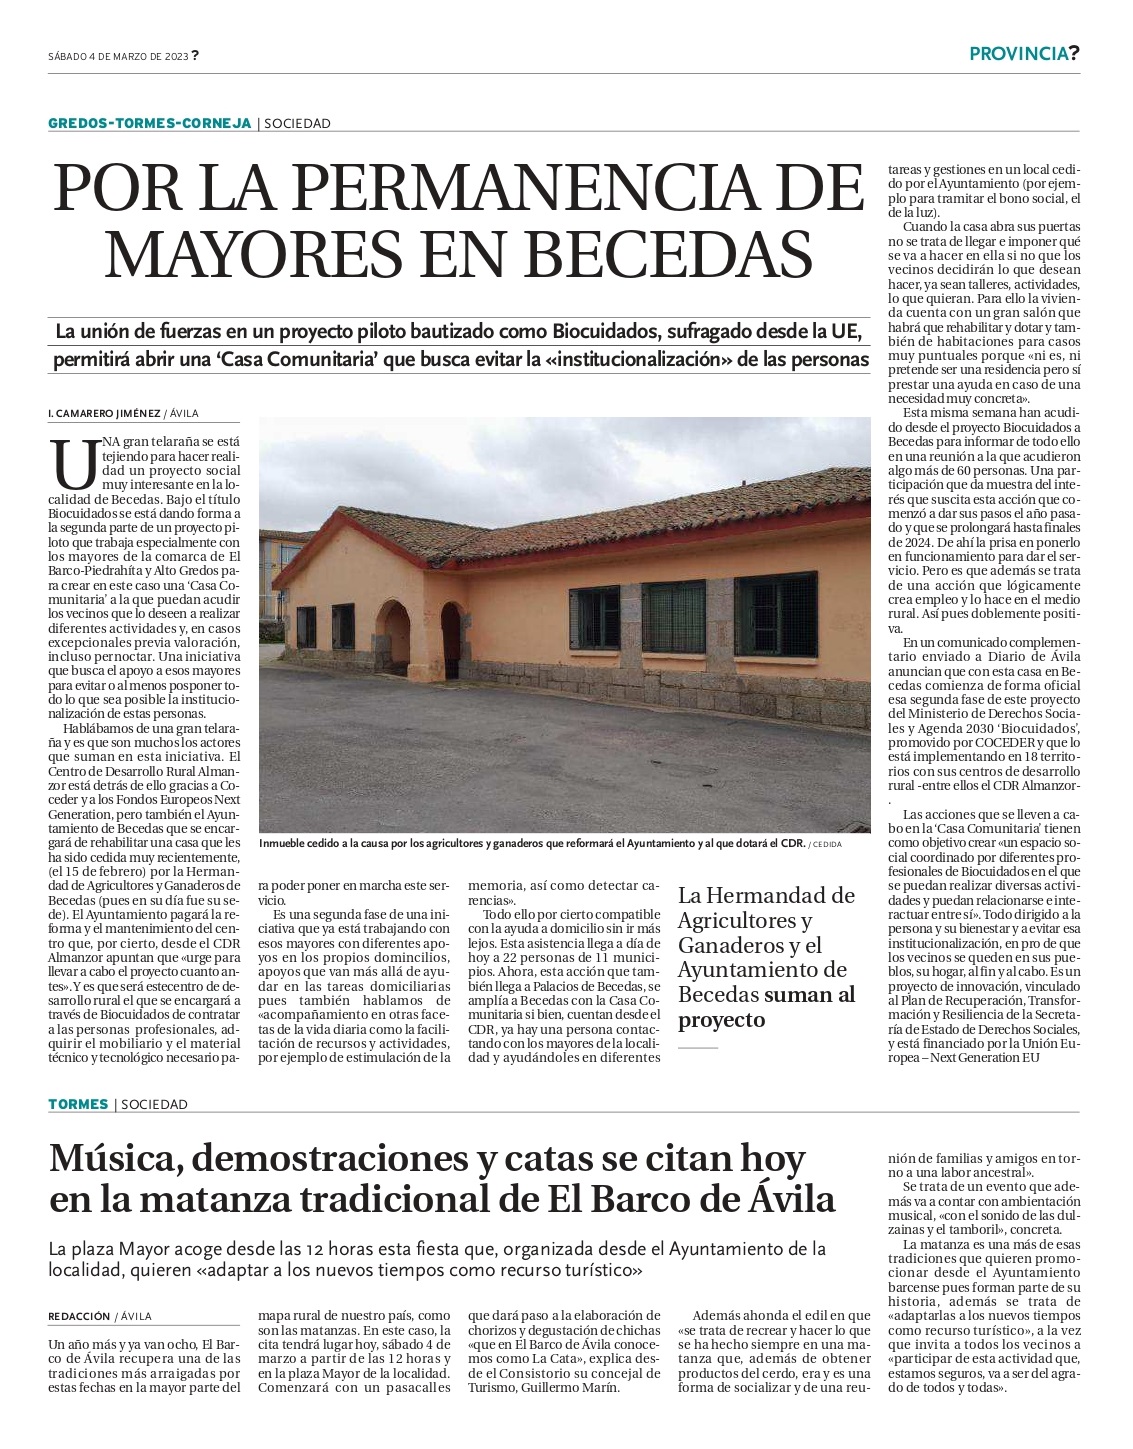 Página de prensa del Diario de Ávila sobre el proyecto de Biocuidados